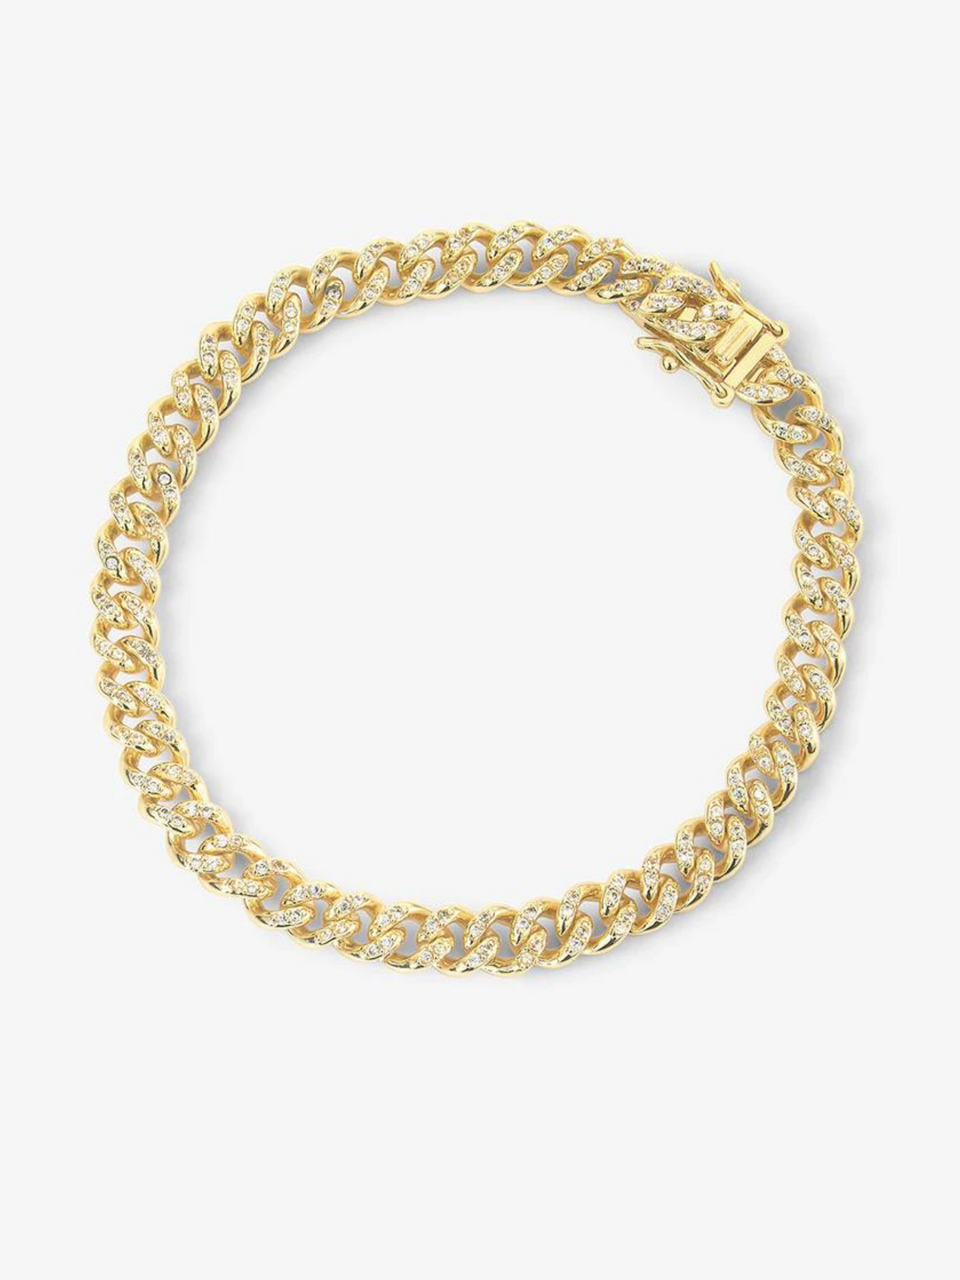 Melinda Maria, Melinda Maria Bracelets, Gold bracelets, Jewelry, bracelets, Melinda Maria Cassie Pave